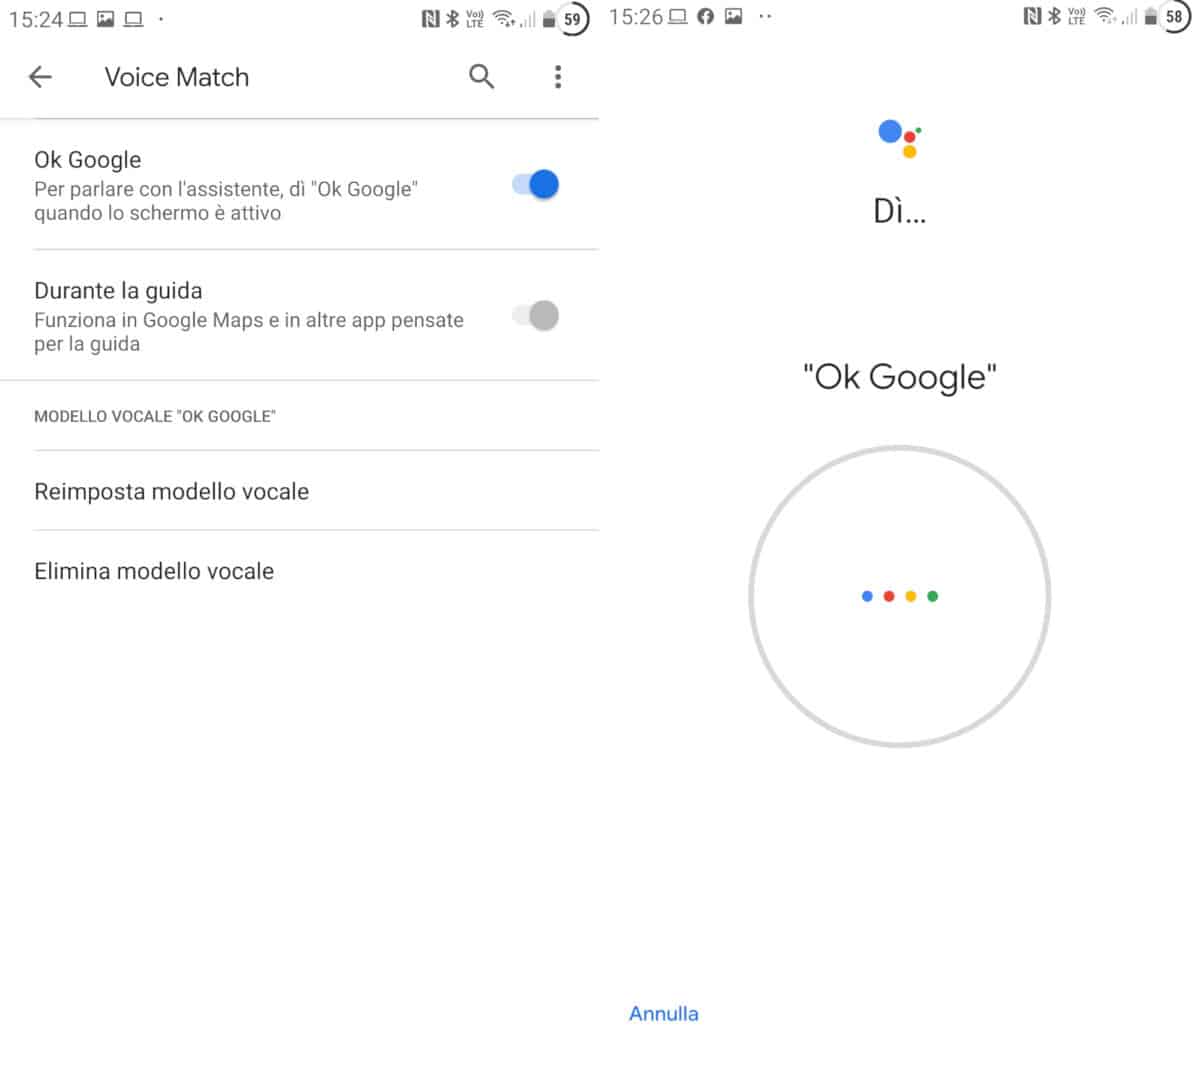 reimpostazione modello vocale di Google